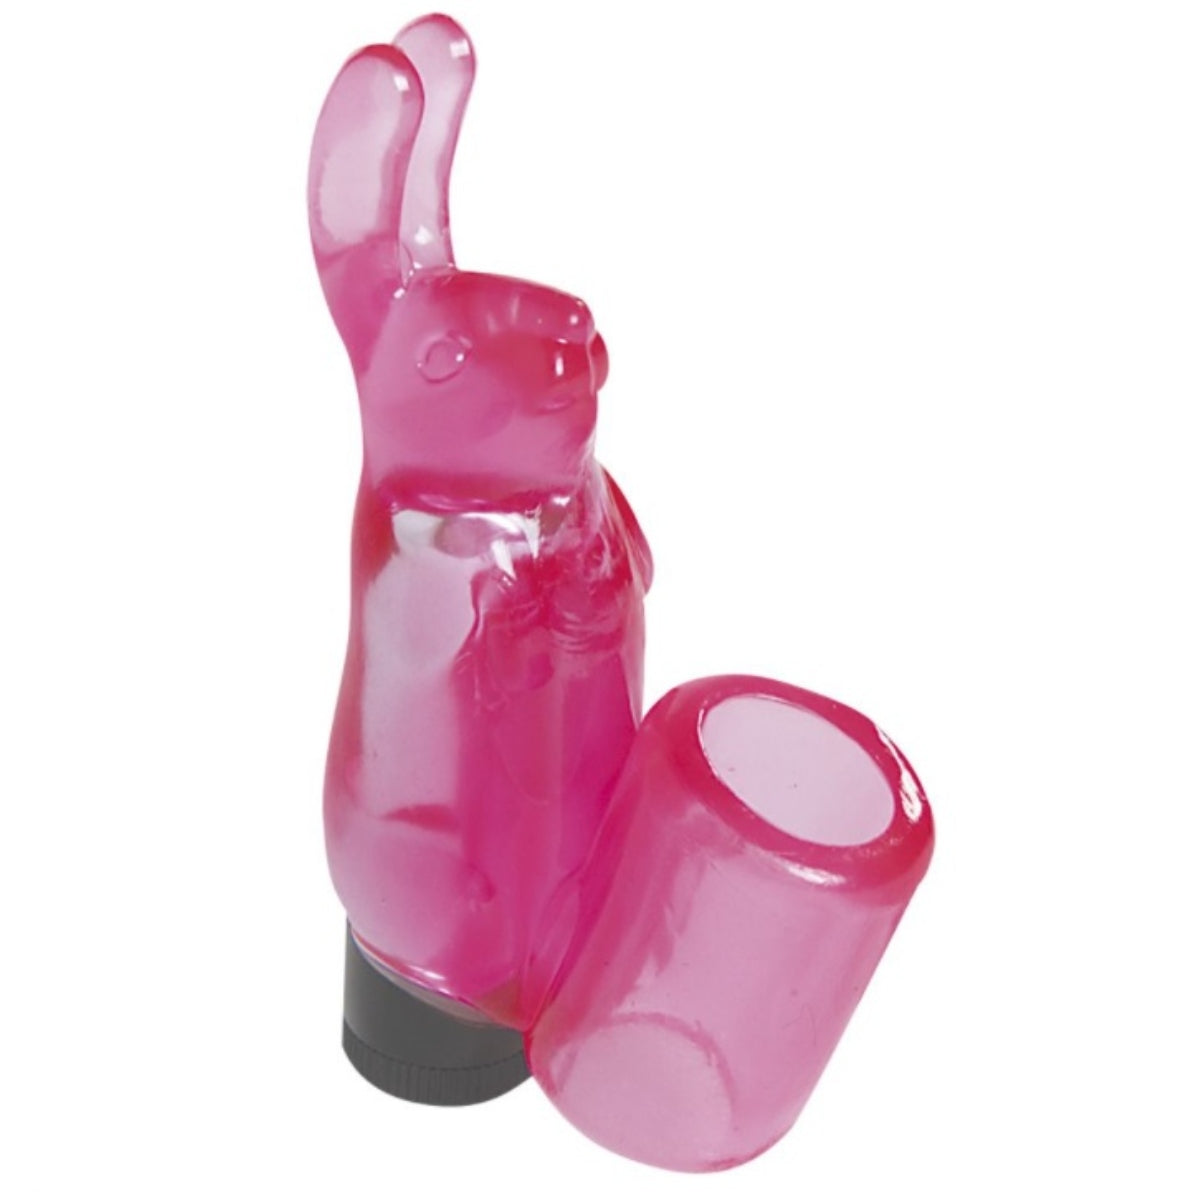 Me You Us Mini Bunny Finger Vibrator Pink - Simply Pleasure